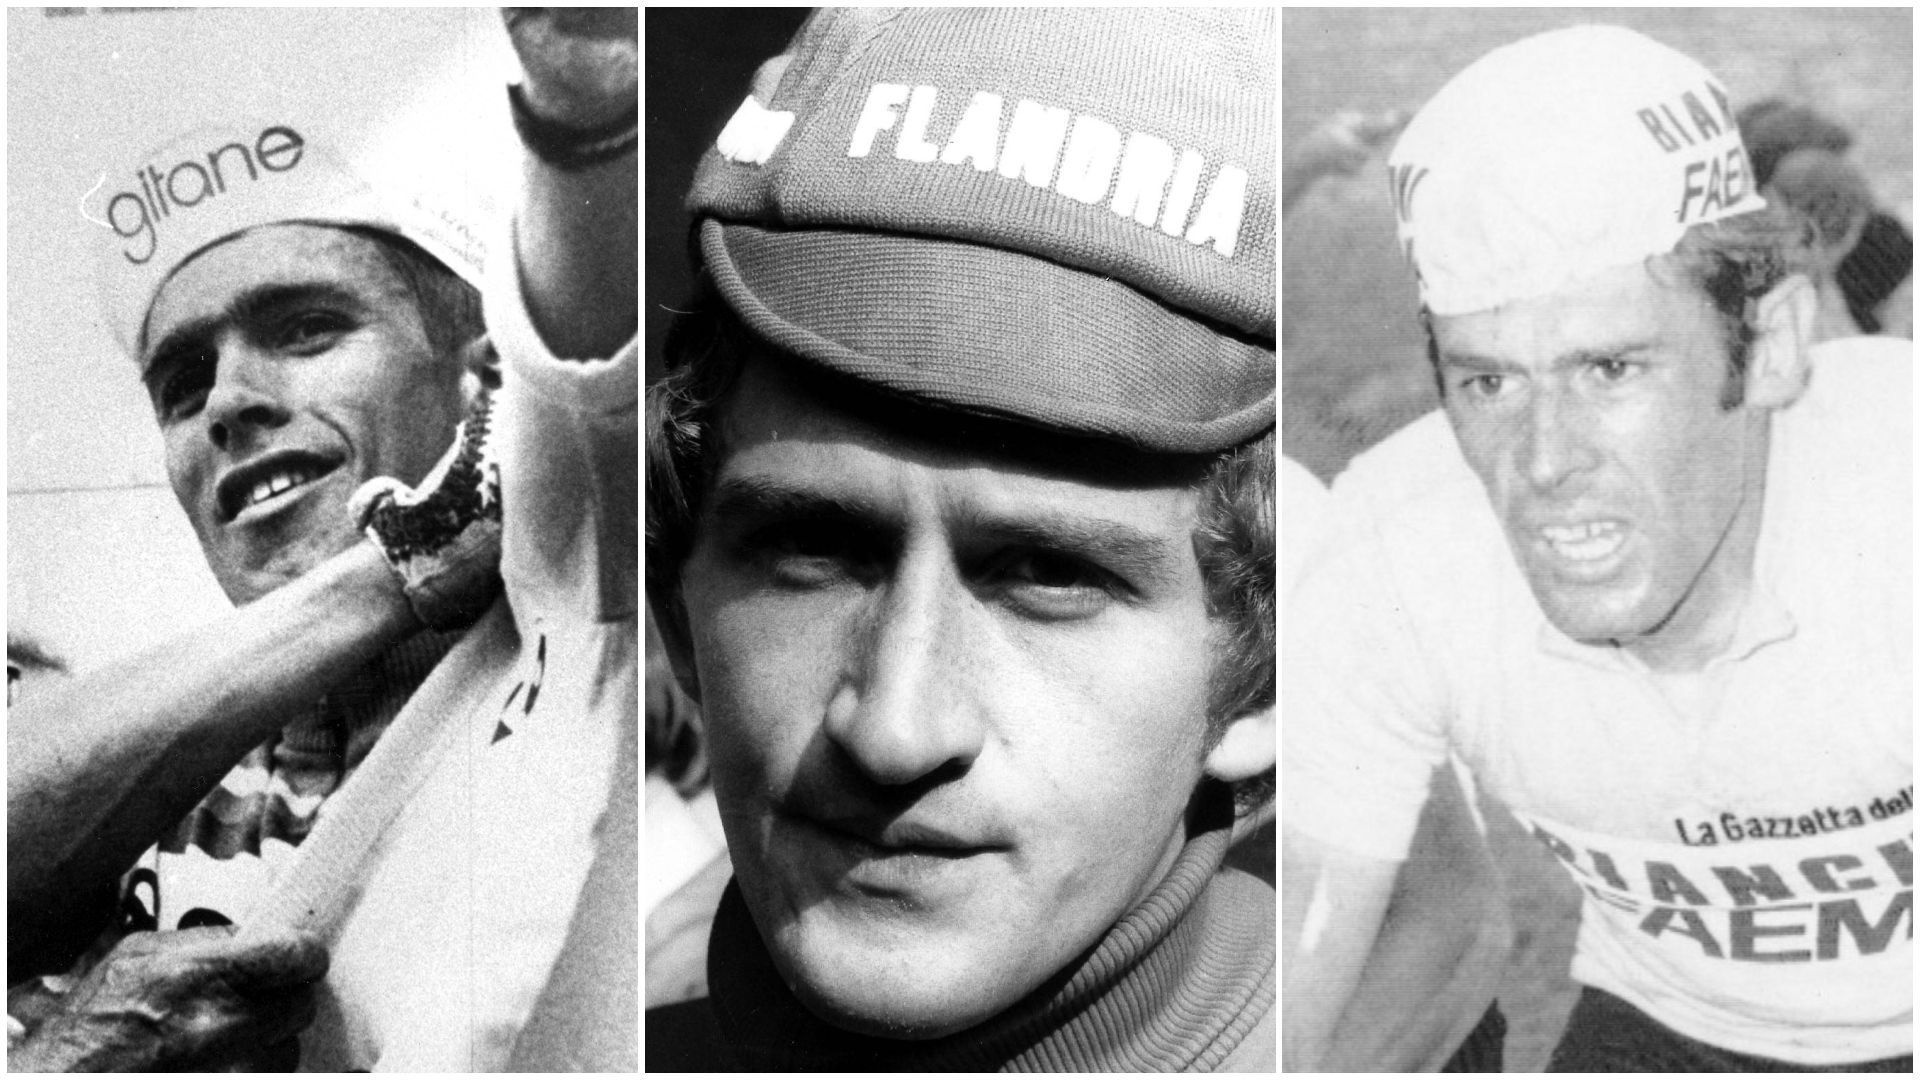 Cyclisme : Avant Remco Evenepoel, les trois derniers coureurs belges qui ont remporté un grand tour. De gauche à droite, Lucien Van Impe (Tour de France 1976), Freddy Maertens (Vuelta 1977) et Johan De Muynck (Giro 1978).